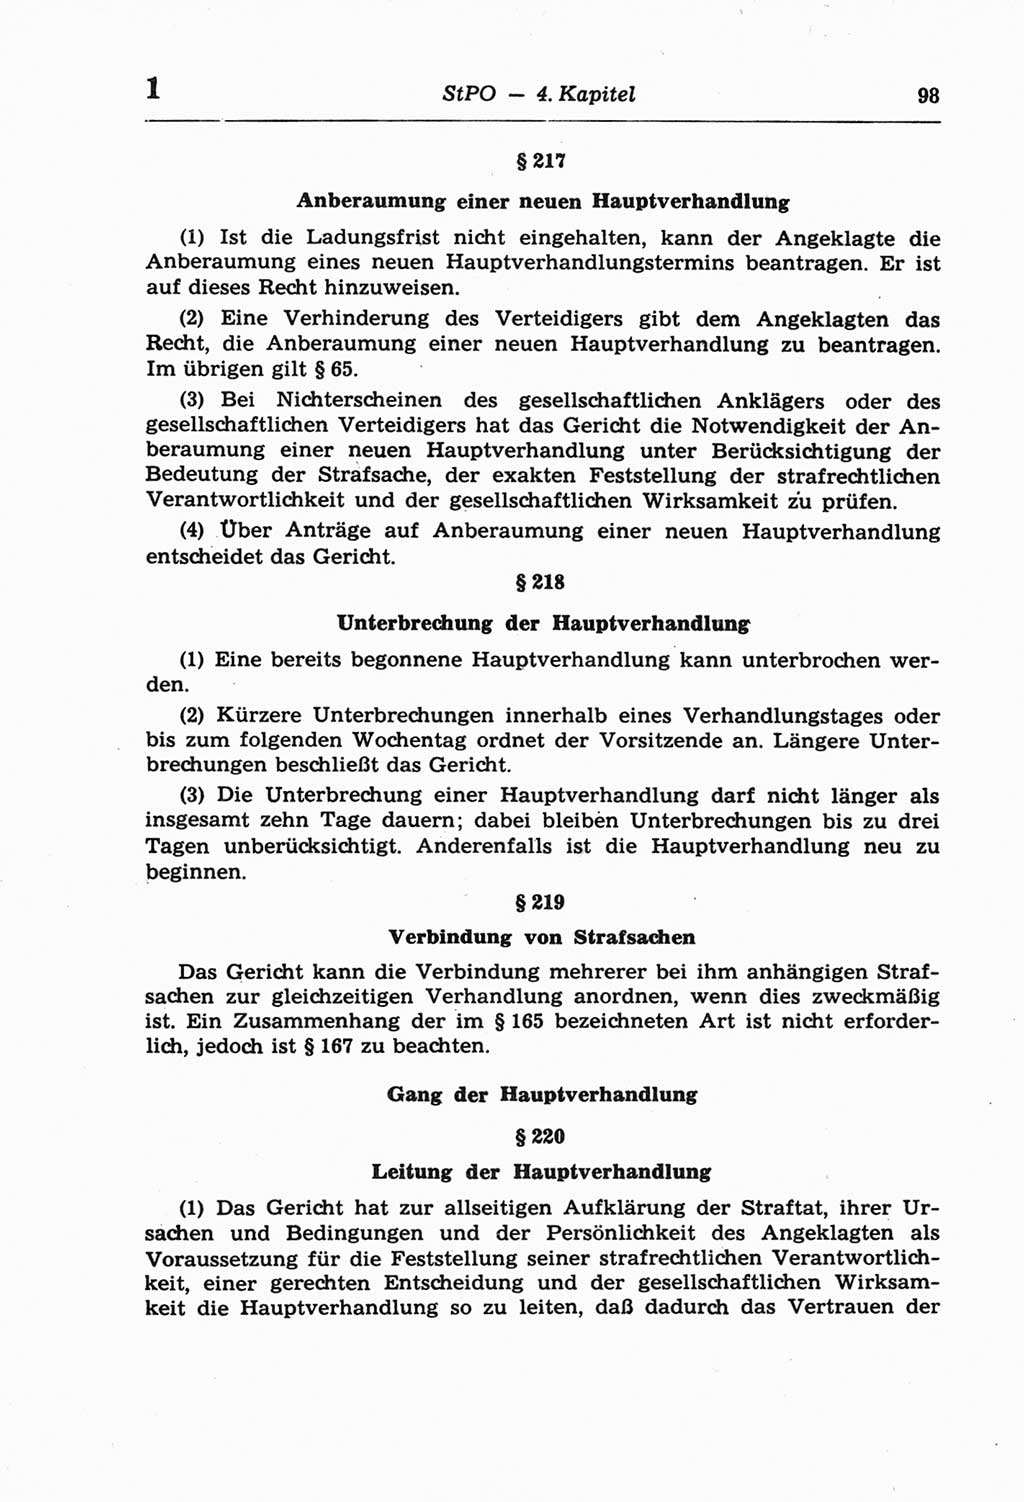 Strafprozeßordnung (StPO) der Deutschen Demokratischen Republik (DDR) und angrenzende Gesetze und Bestimmungen 1968, Seite 98 (StPO Ges. Bstgn. DDR 1968, S. 98)